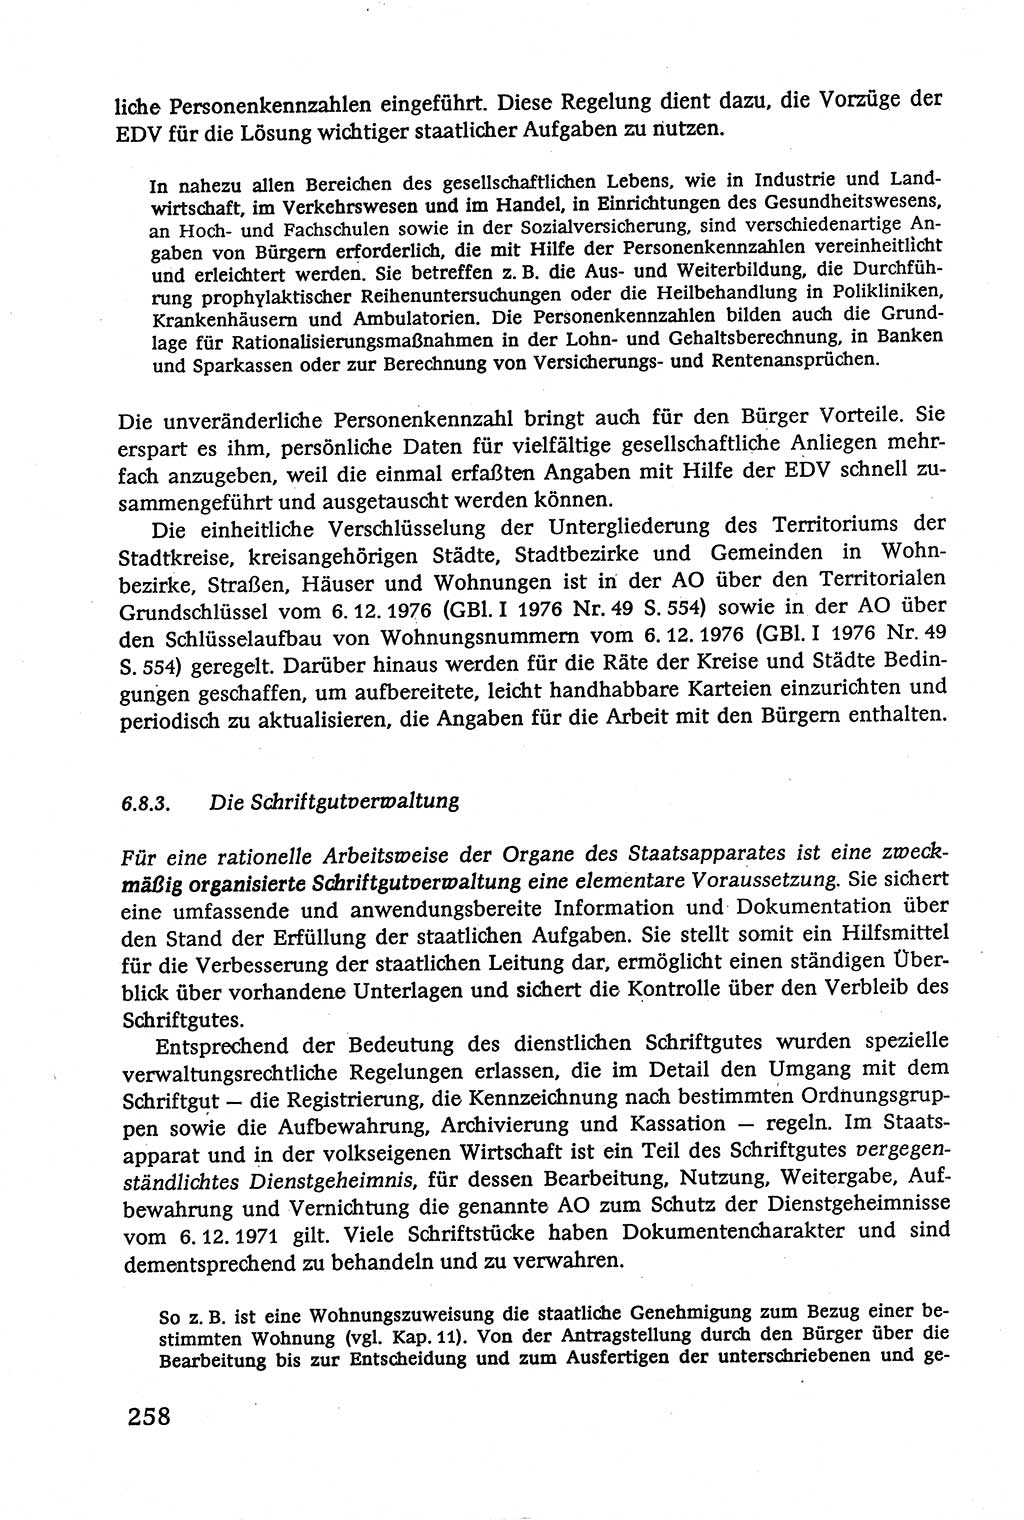 Verwaltungsrecht [Deutsche Demokratische Republik (DDR)], Lehrbuch 1979, Seite 258 (Verw.-R. DDR Lb. 1979, S. 258)